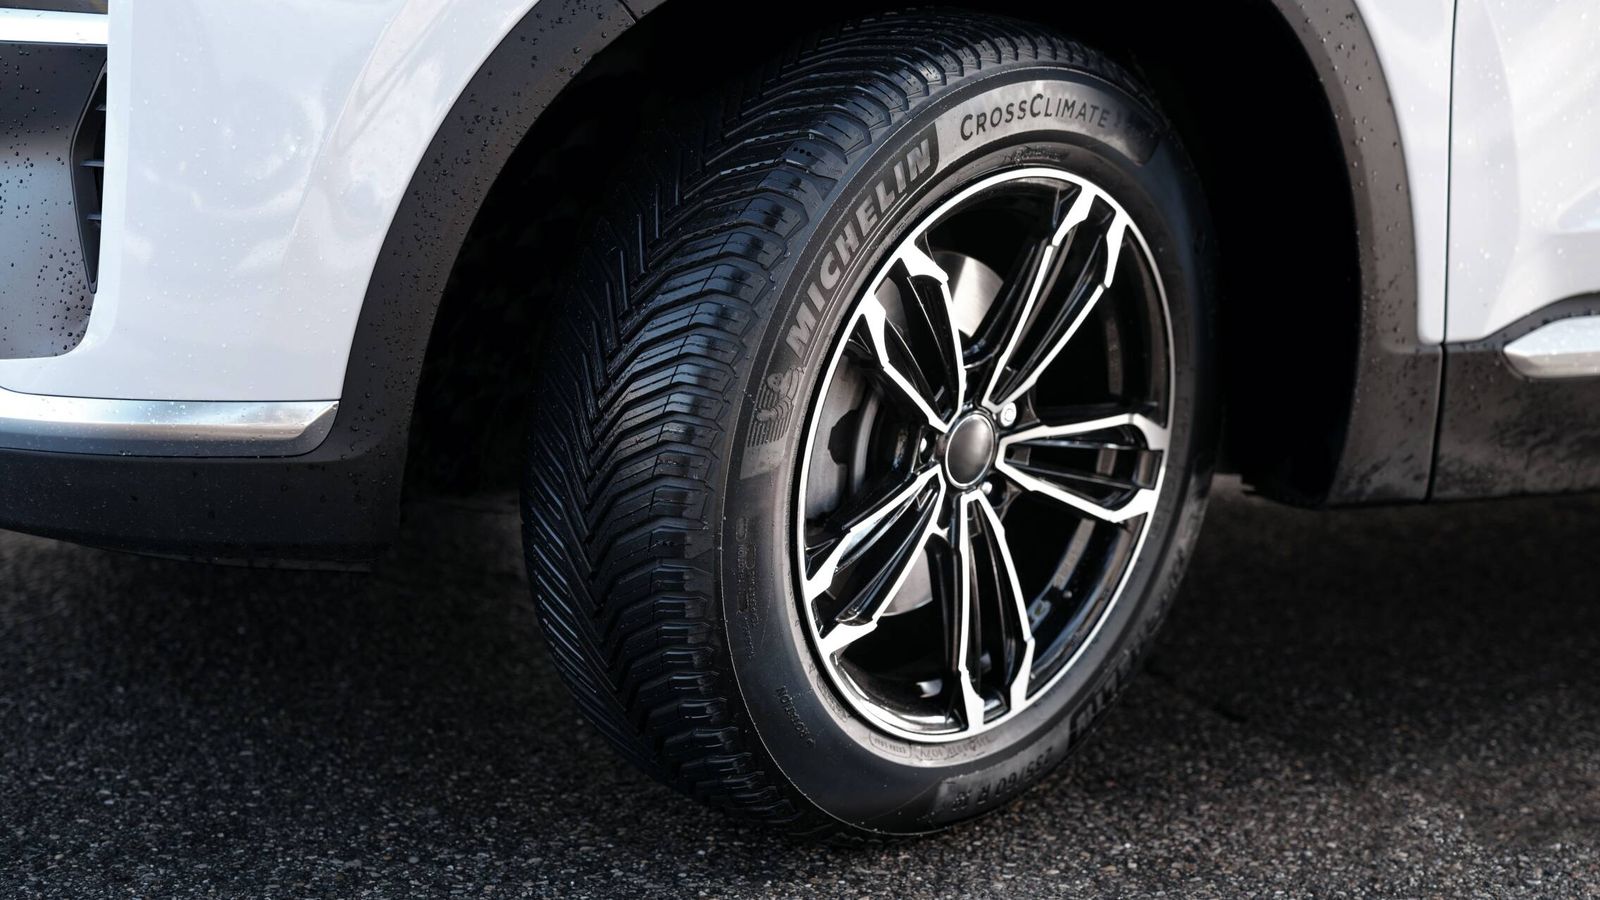 Son neumáticos válidos para usar todo el año, tanto con calor como con frío.